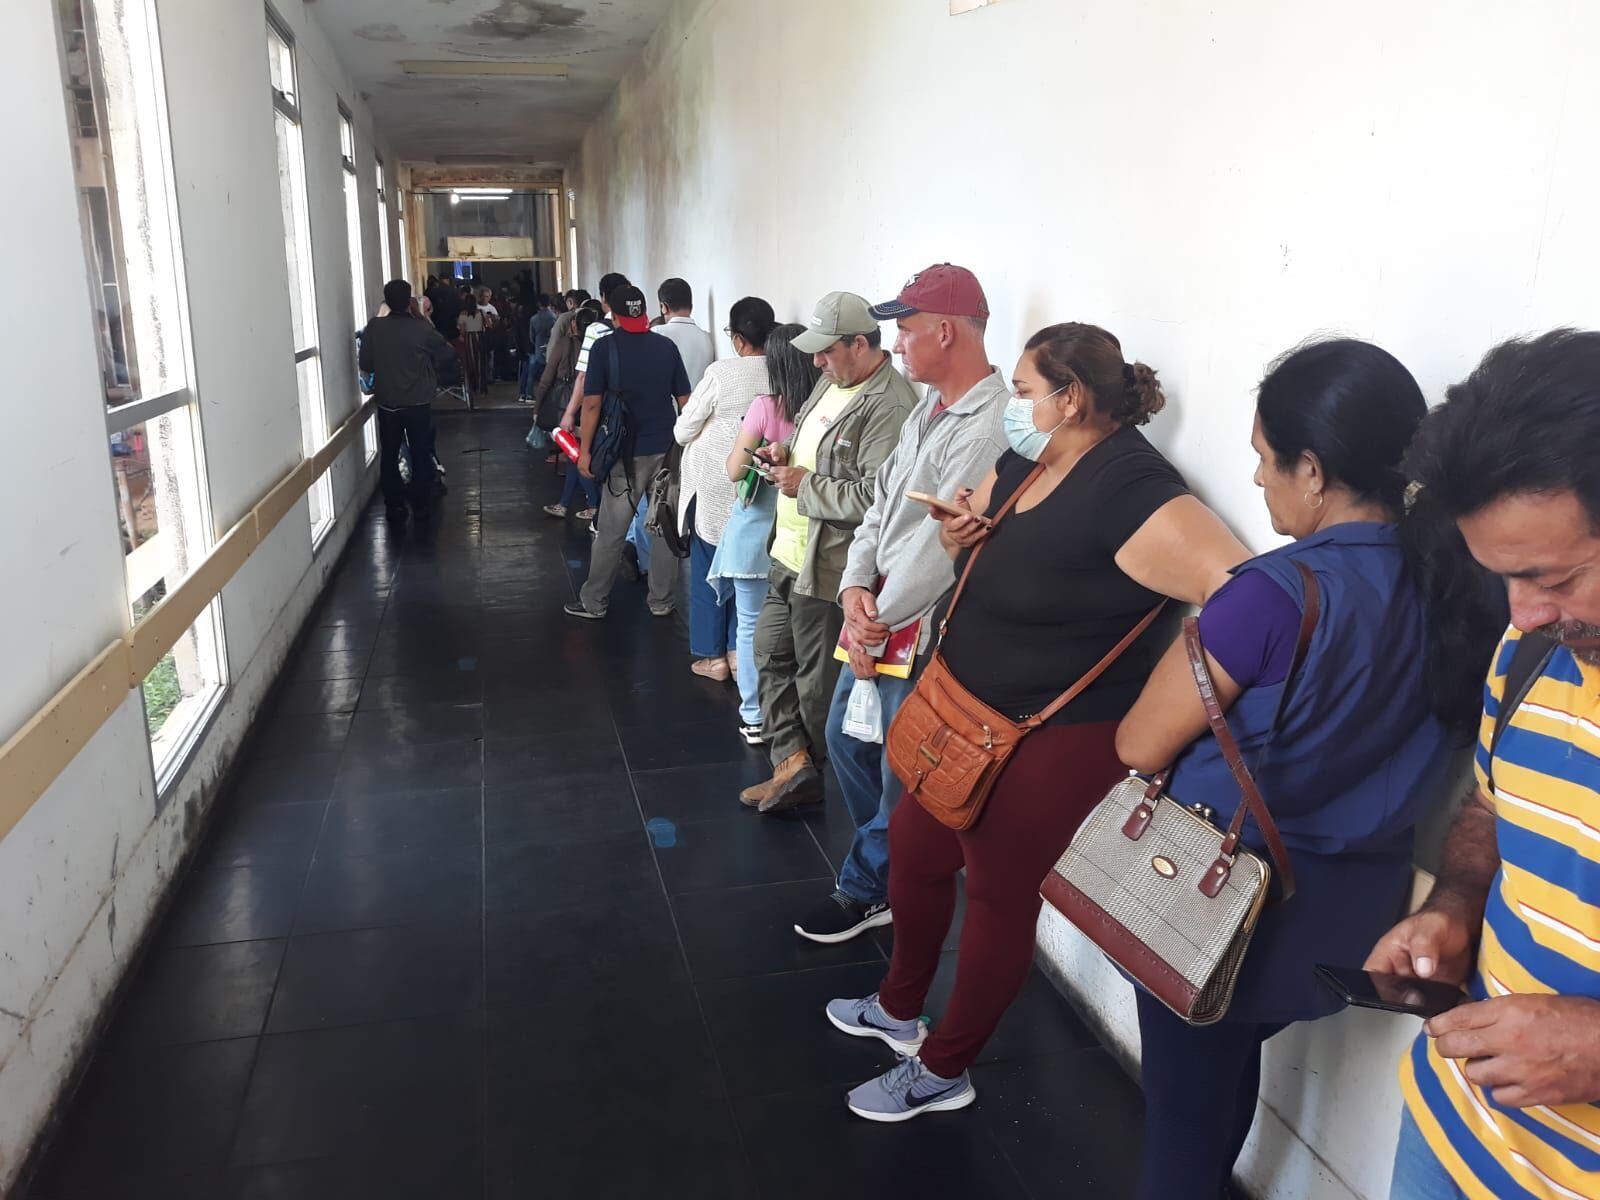 Fila de pacientes a la espera de sus tratamientos en el Incan, el pasado lunes 24 de abril, fecha en que la Cámara de Diputados debía sesionar pero dieron la espalda a las necesidades oncológicas. 